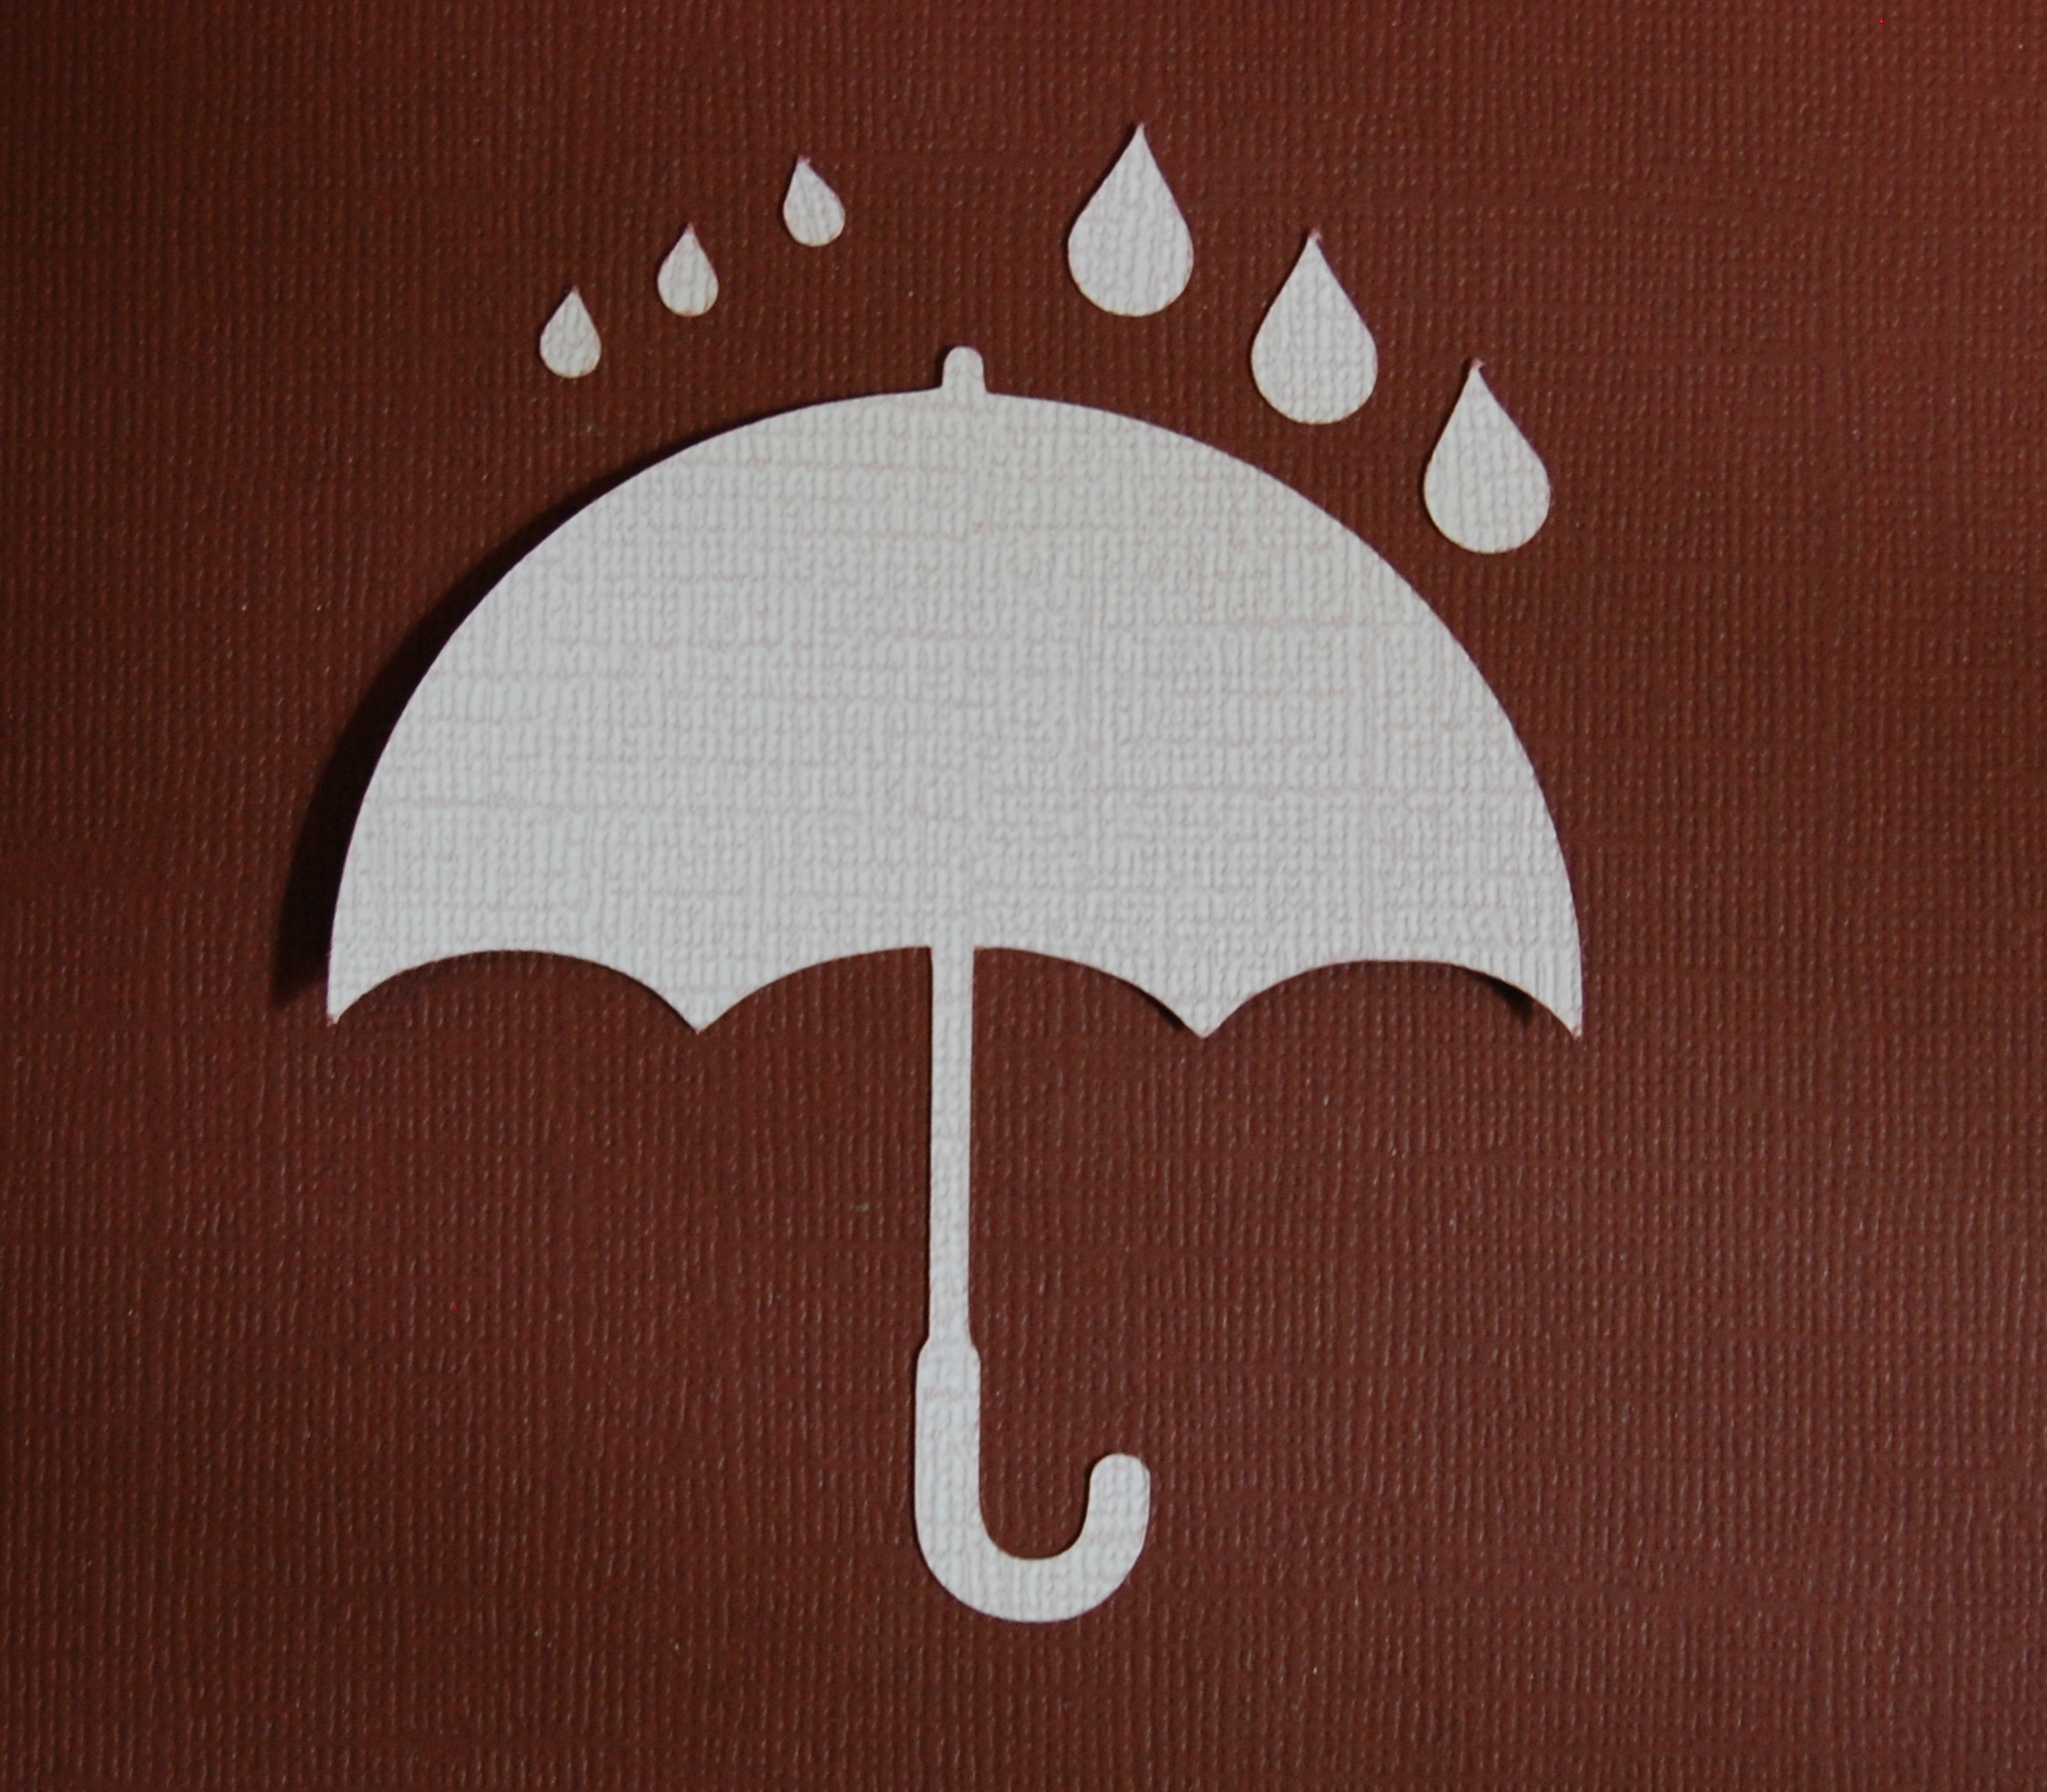 Diemond Dies Umbrella and Raindrops Die Set